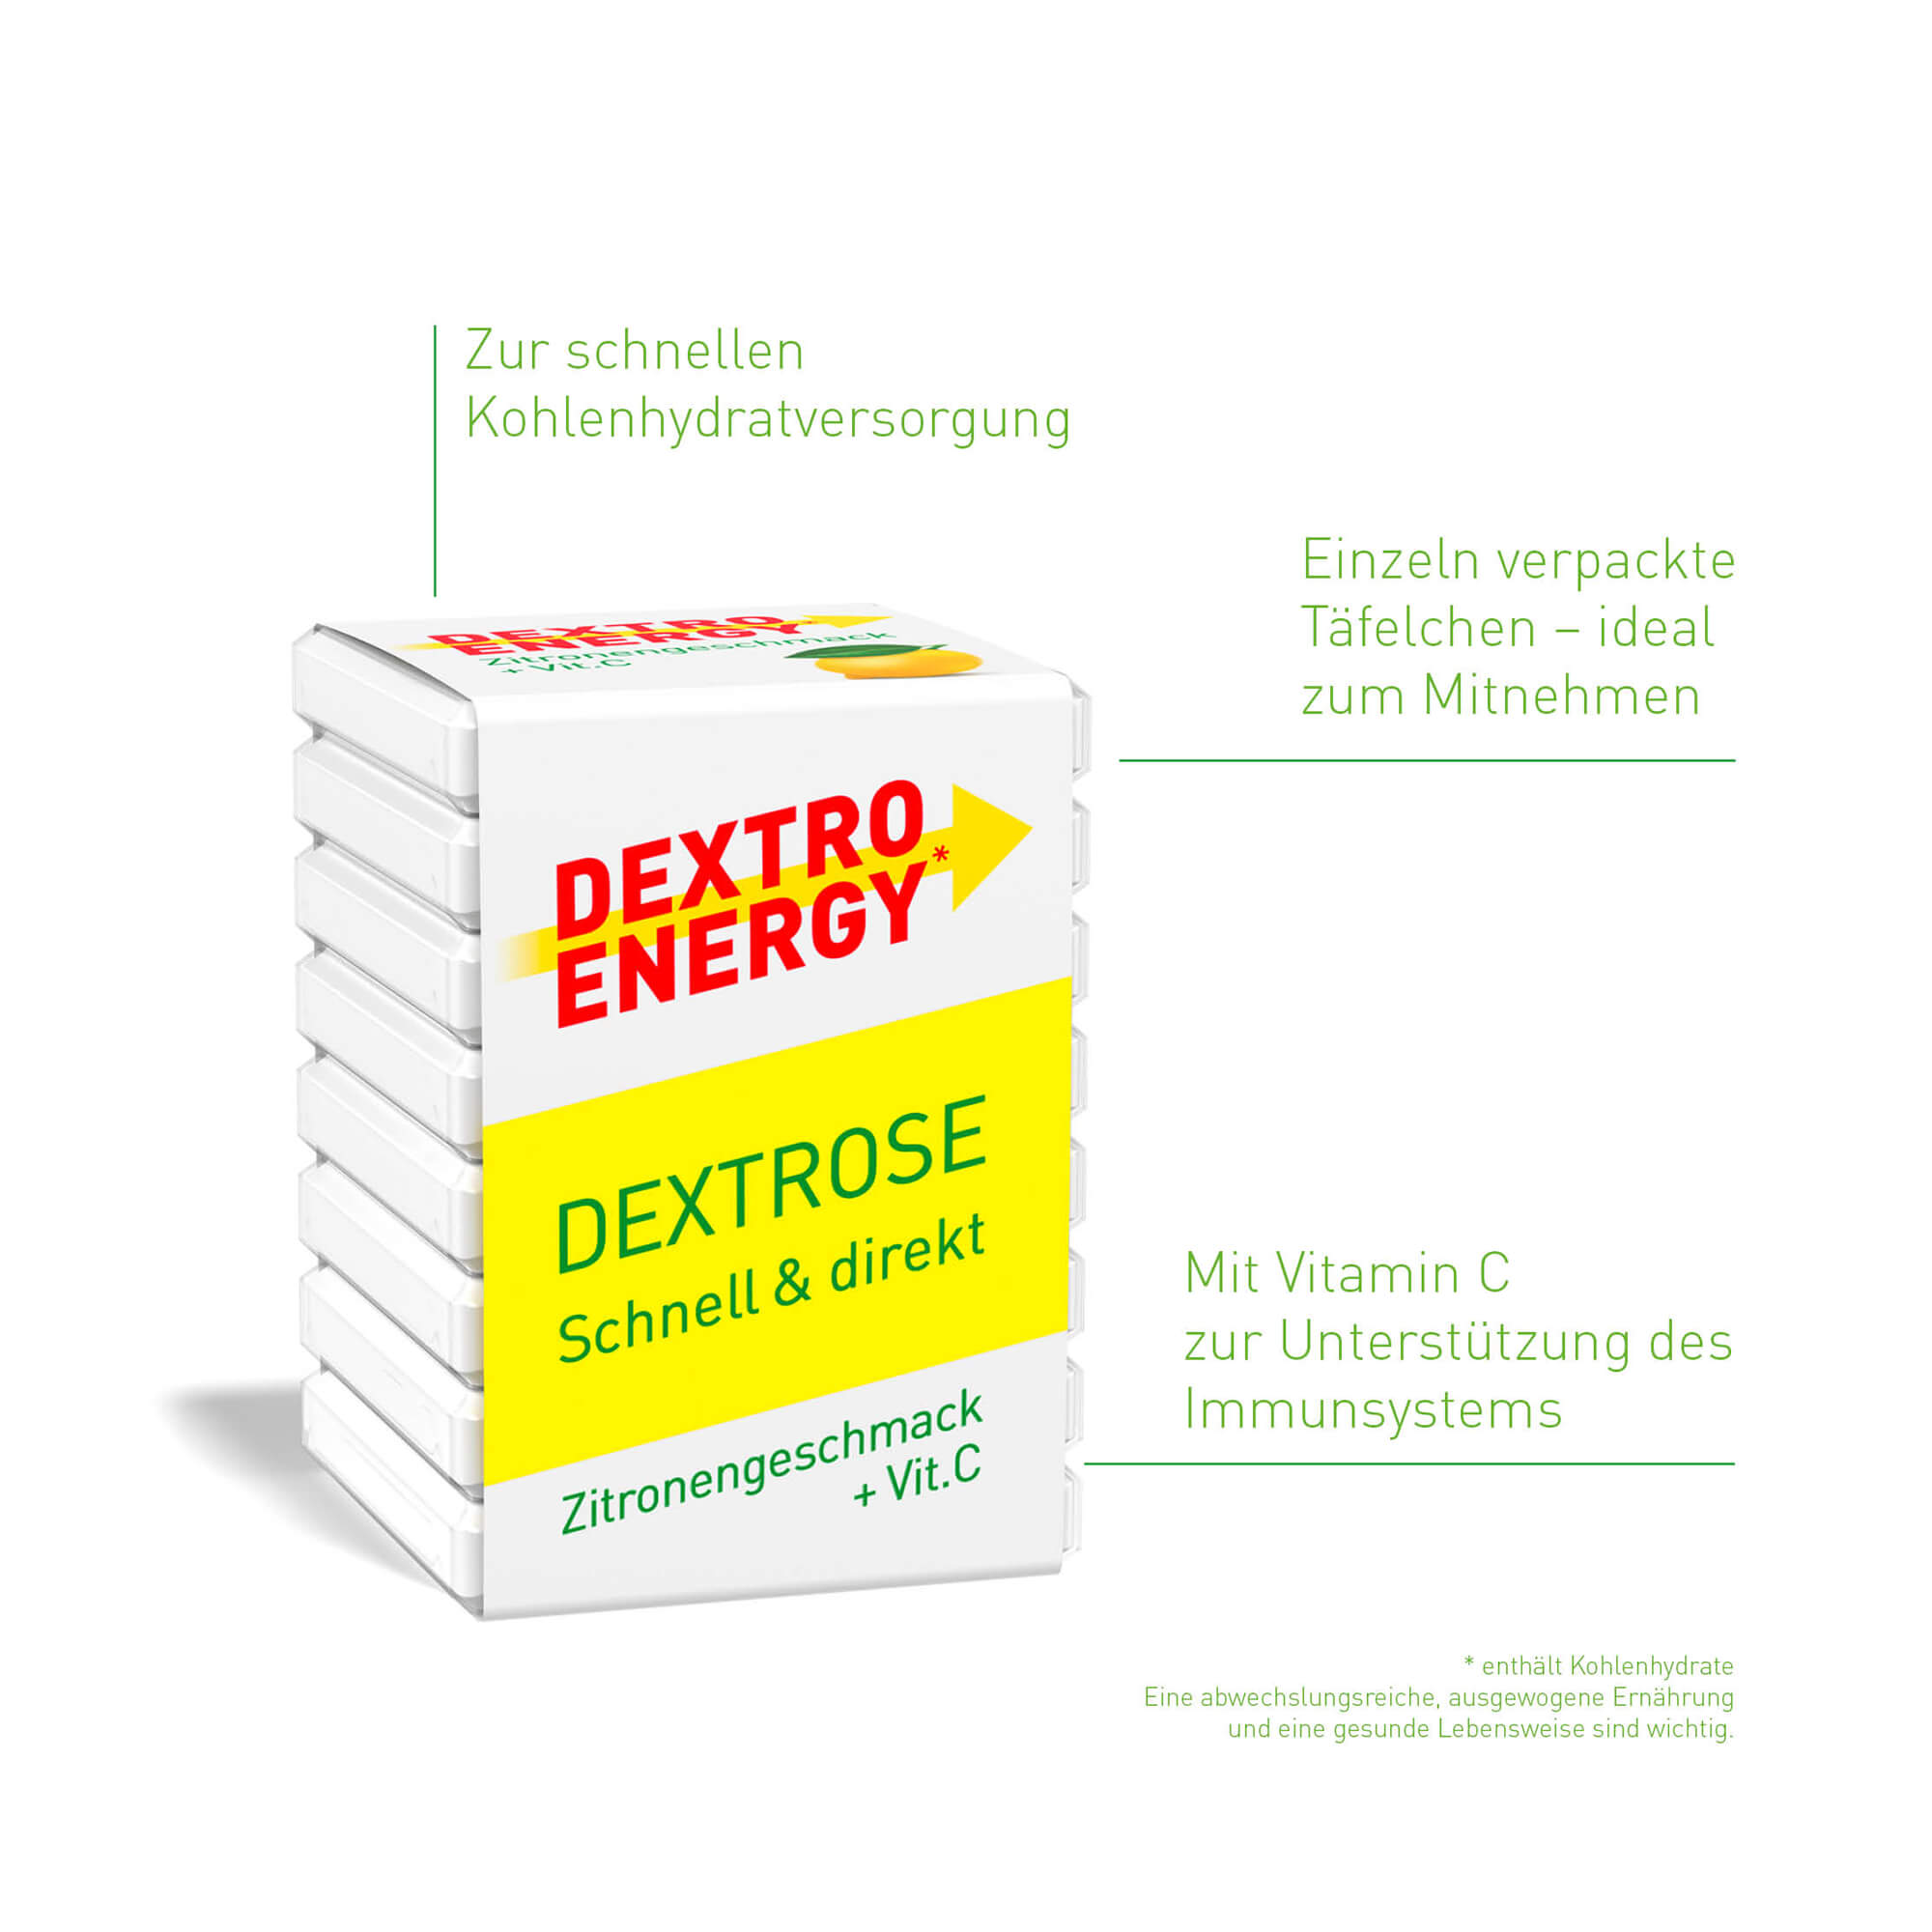 Grafik Dextro Energy* Zitrone + Vitamin C Eigenschaften